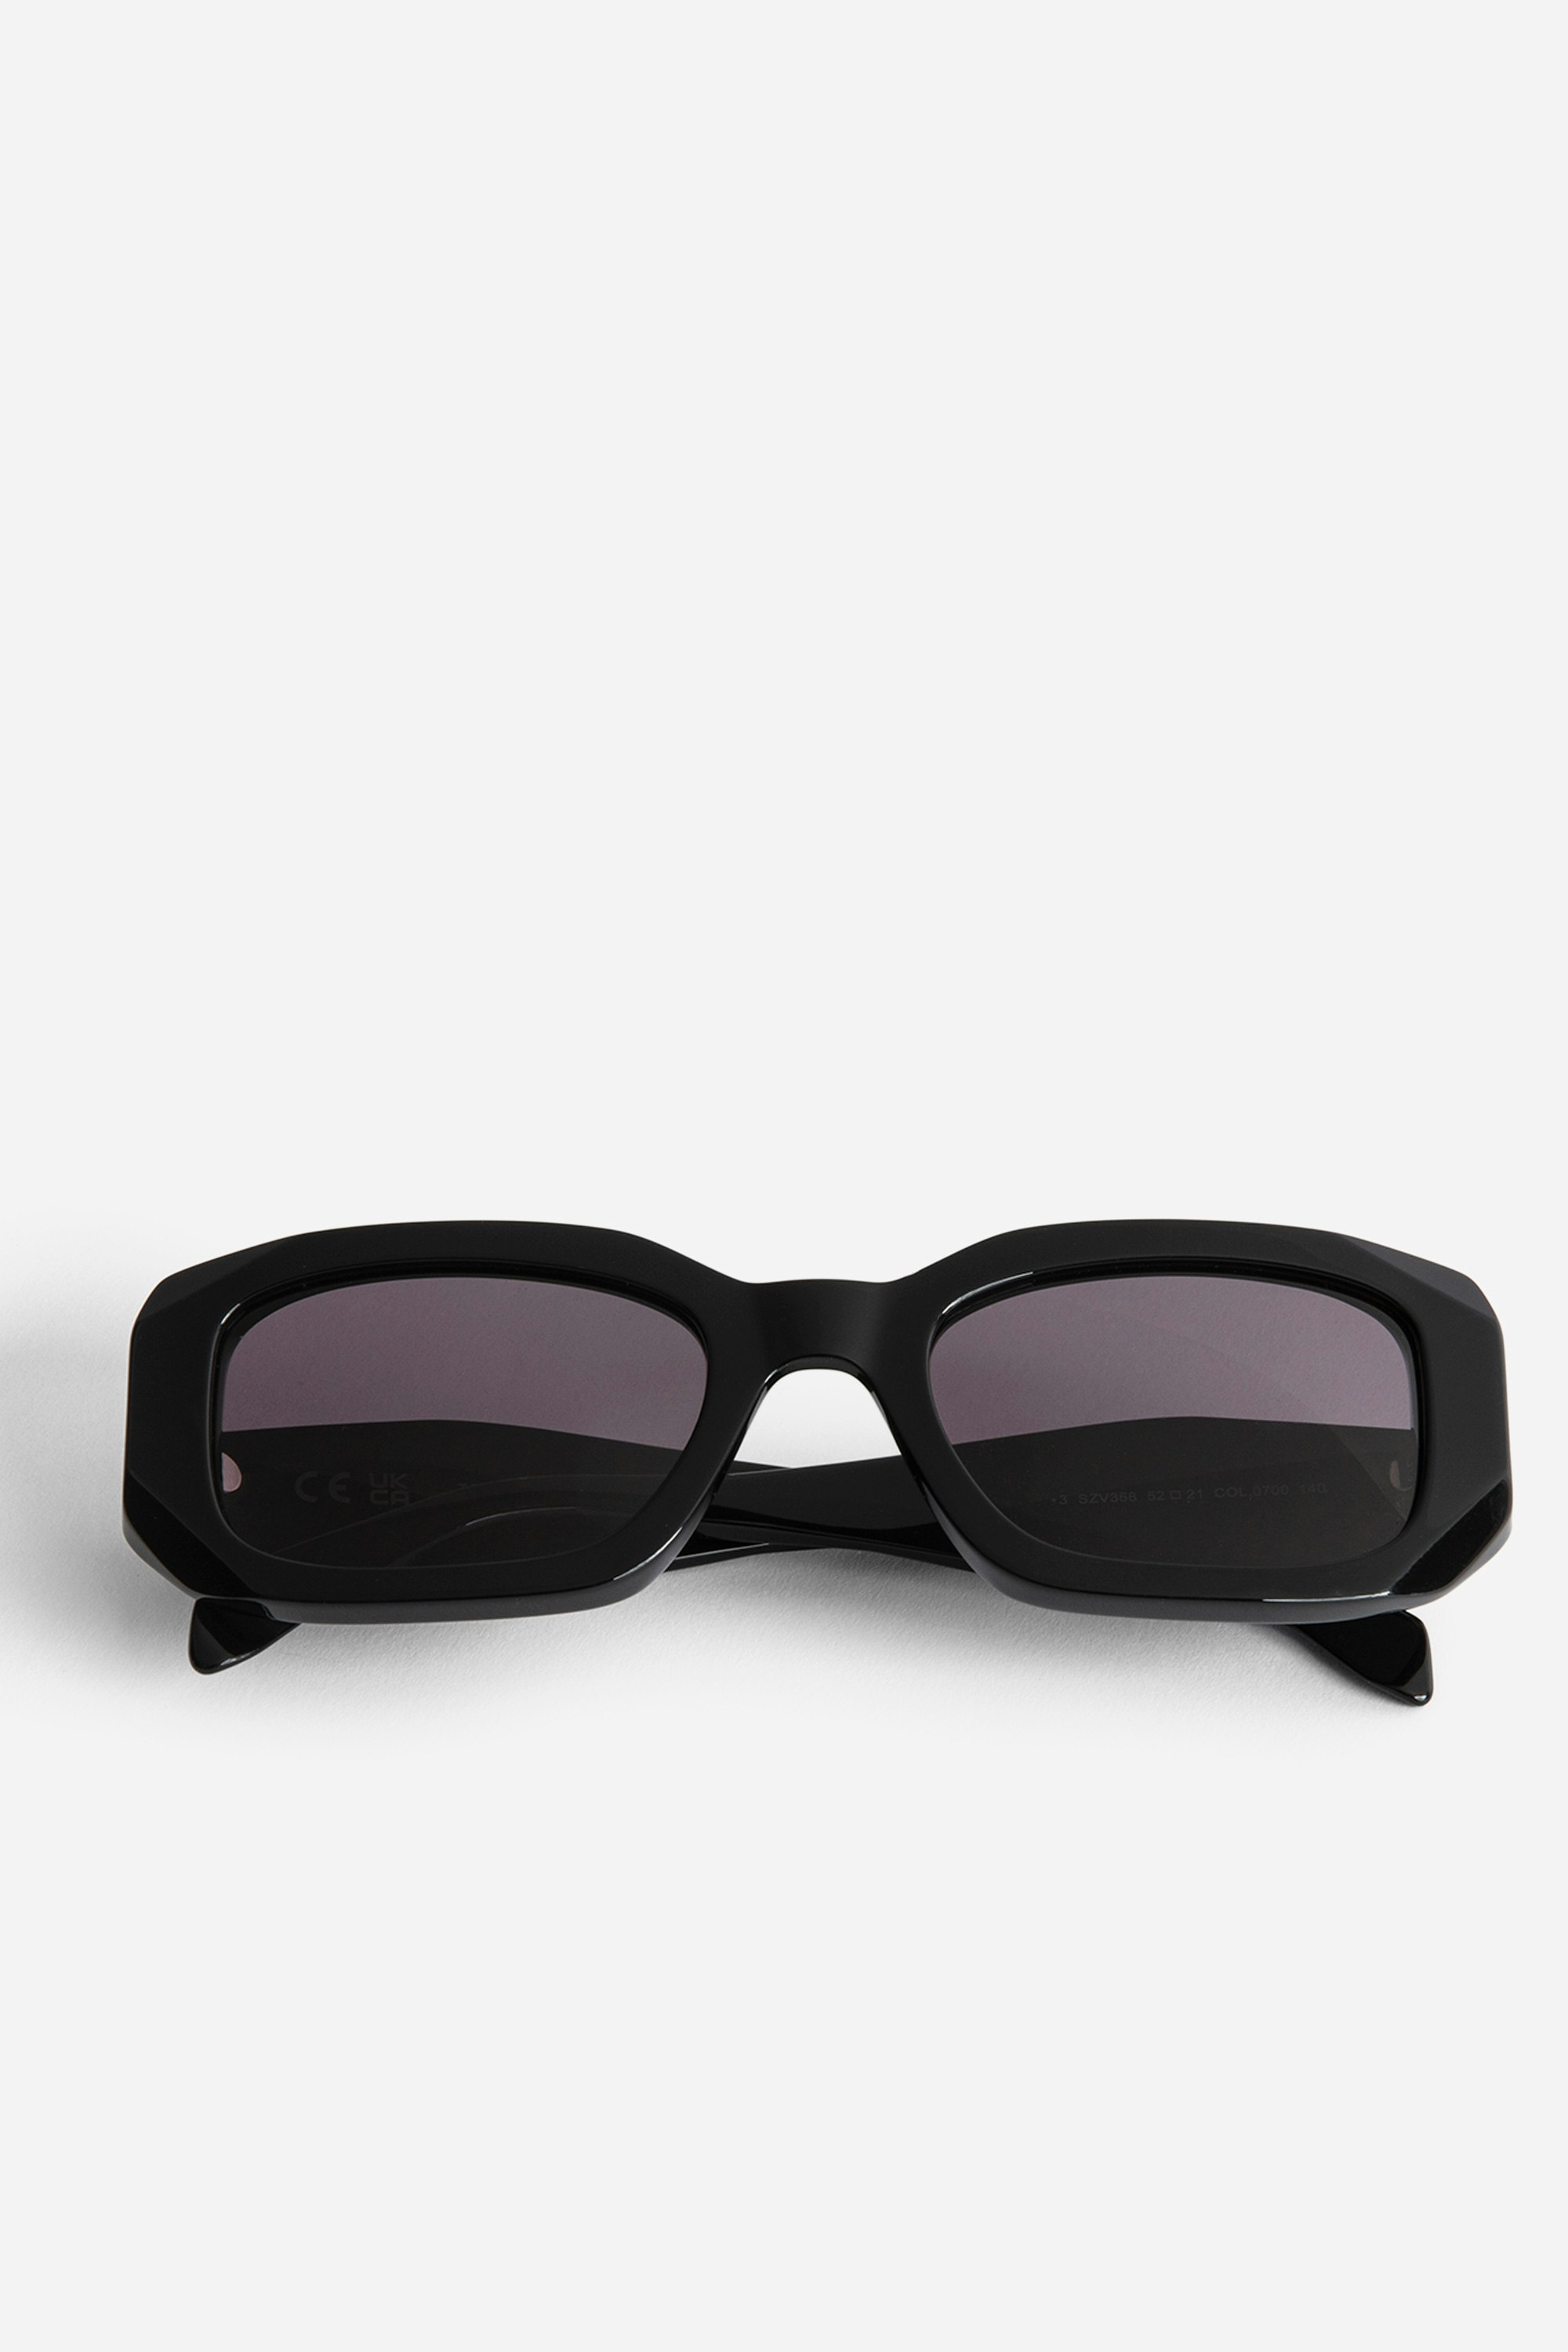 Sonnenbrille ZV23H3 - Schwarze, rechteckige Unisex-Sonnenbrille mit Flügeln auf den destrukturierten Bügeln.